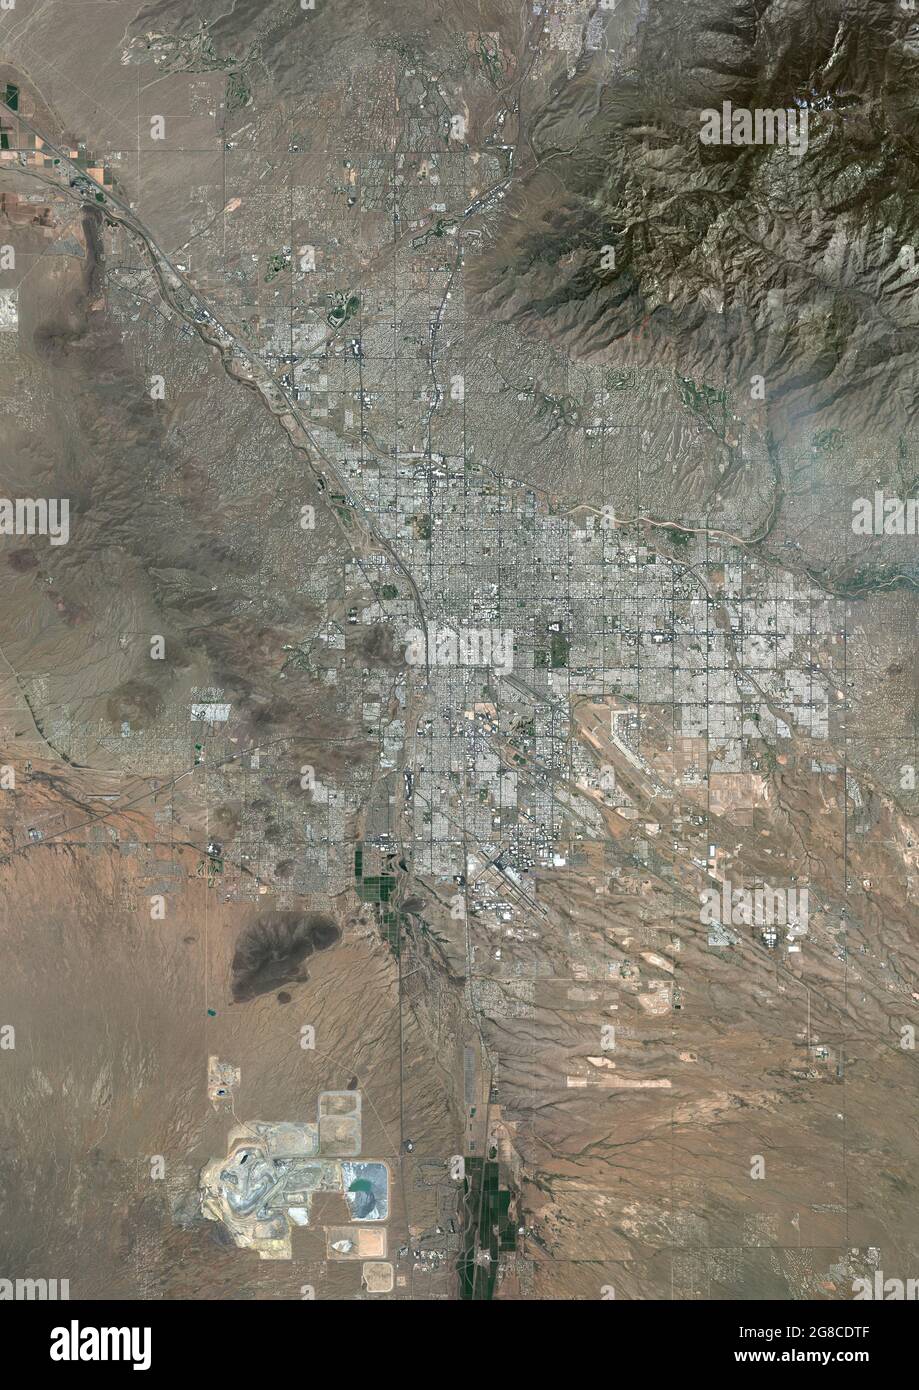 Tucson, Arizona, United States Stock Photo